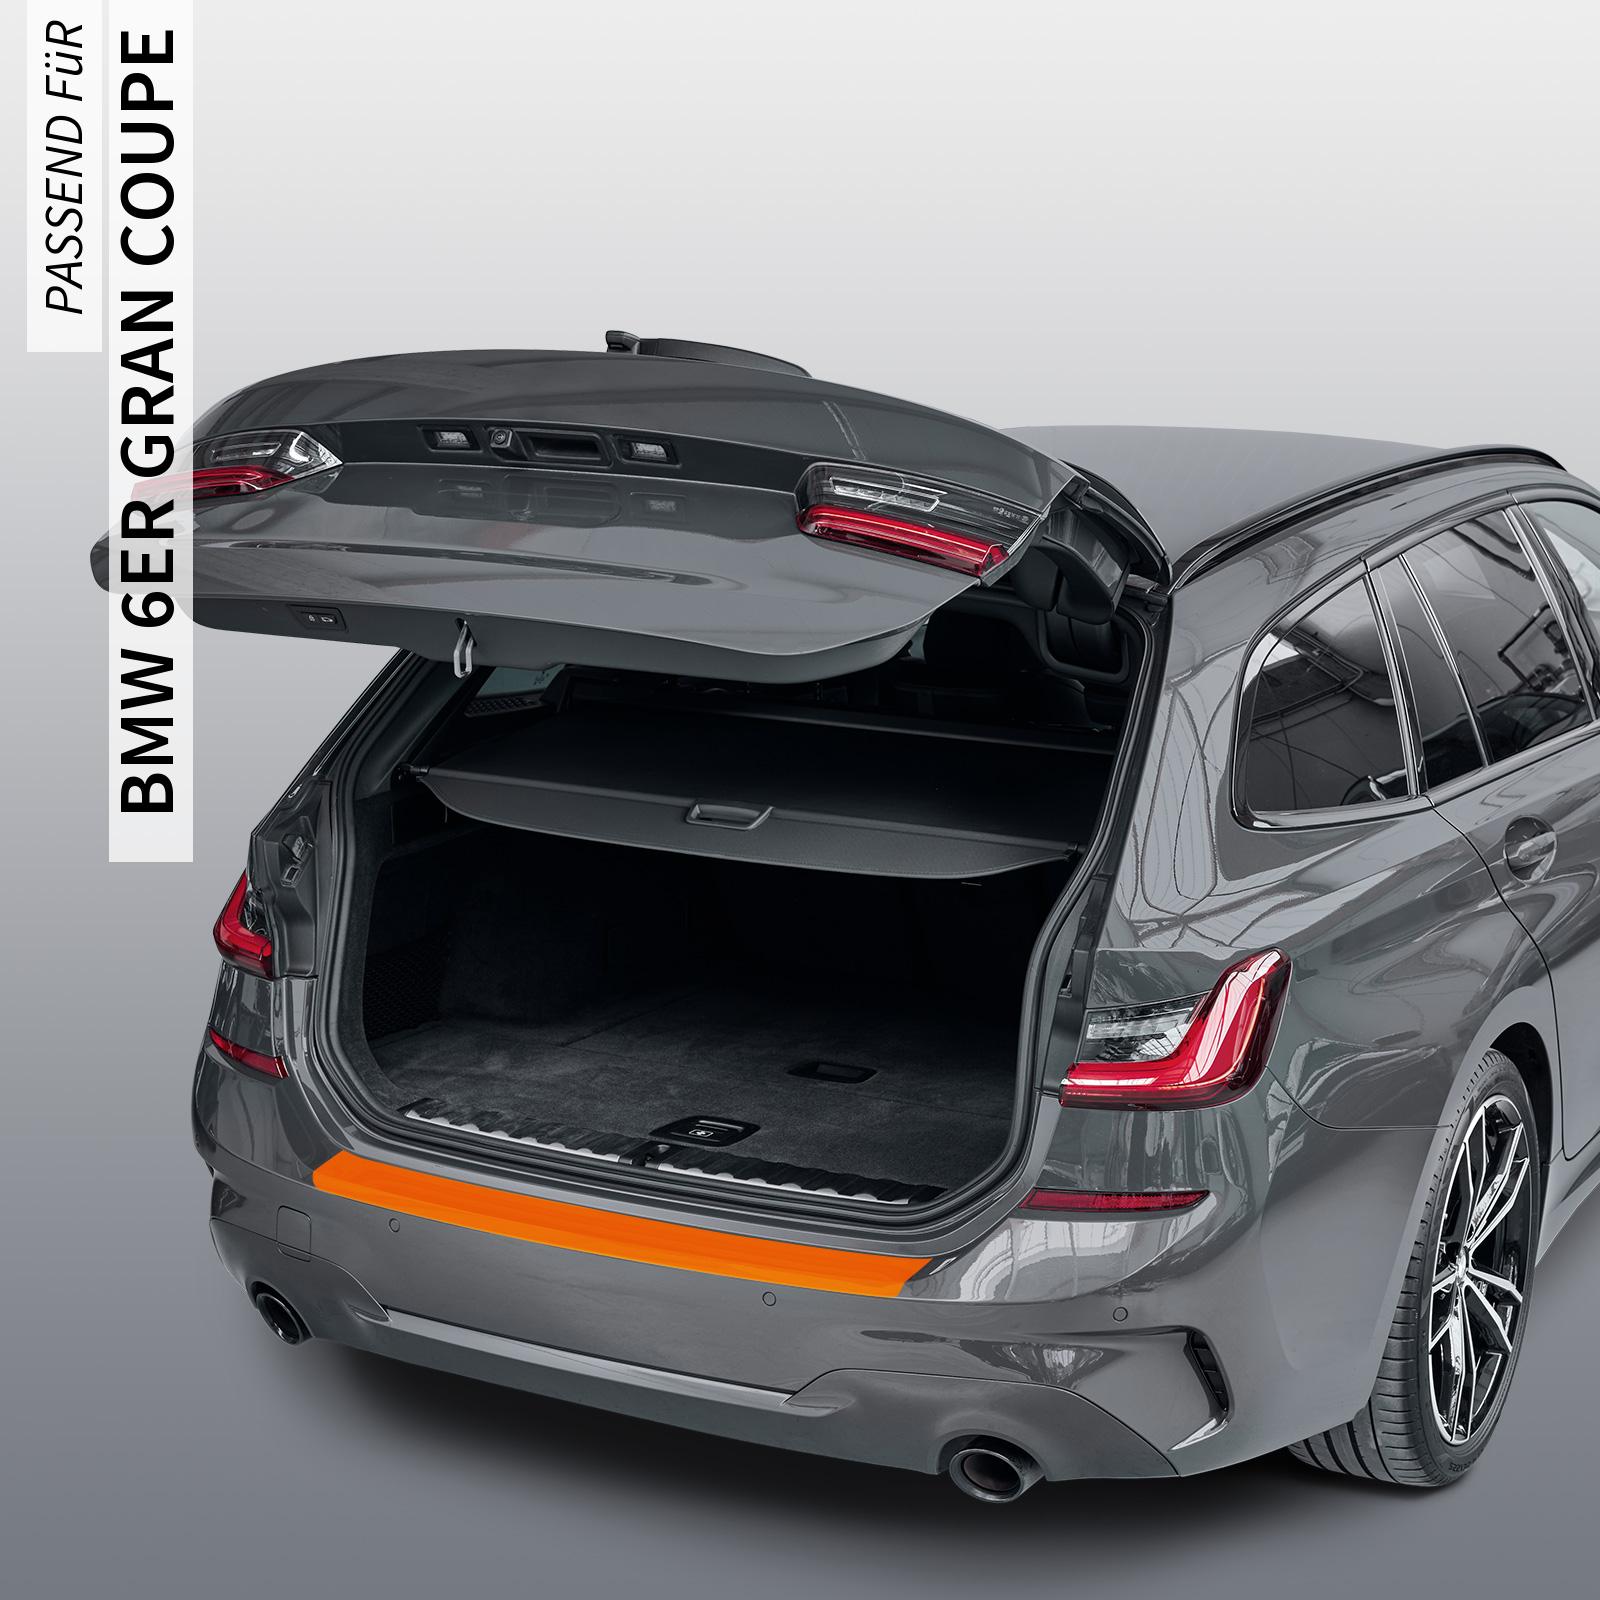 Ladekantenschutzfolie - Transparent Glatt MATT 110 µm stark  für BMW 6er Gran Coupe Typ F06, ab BJ 05/2012